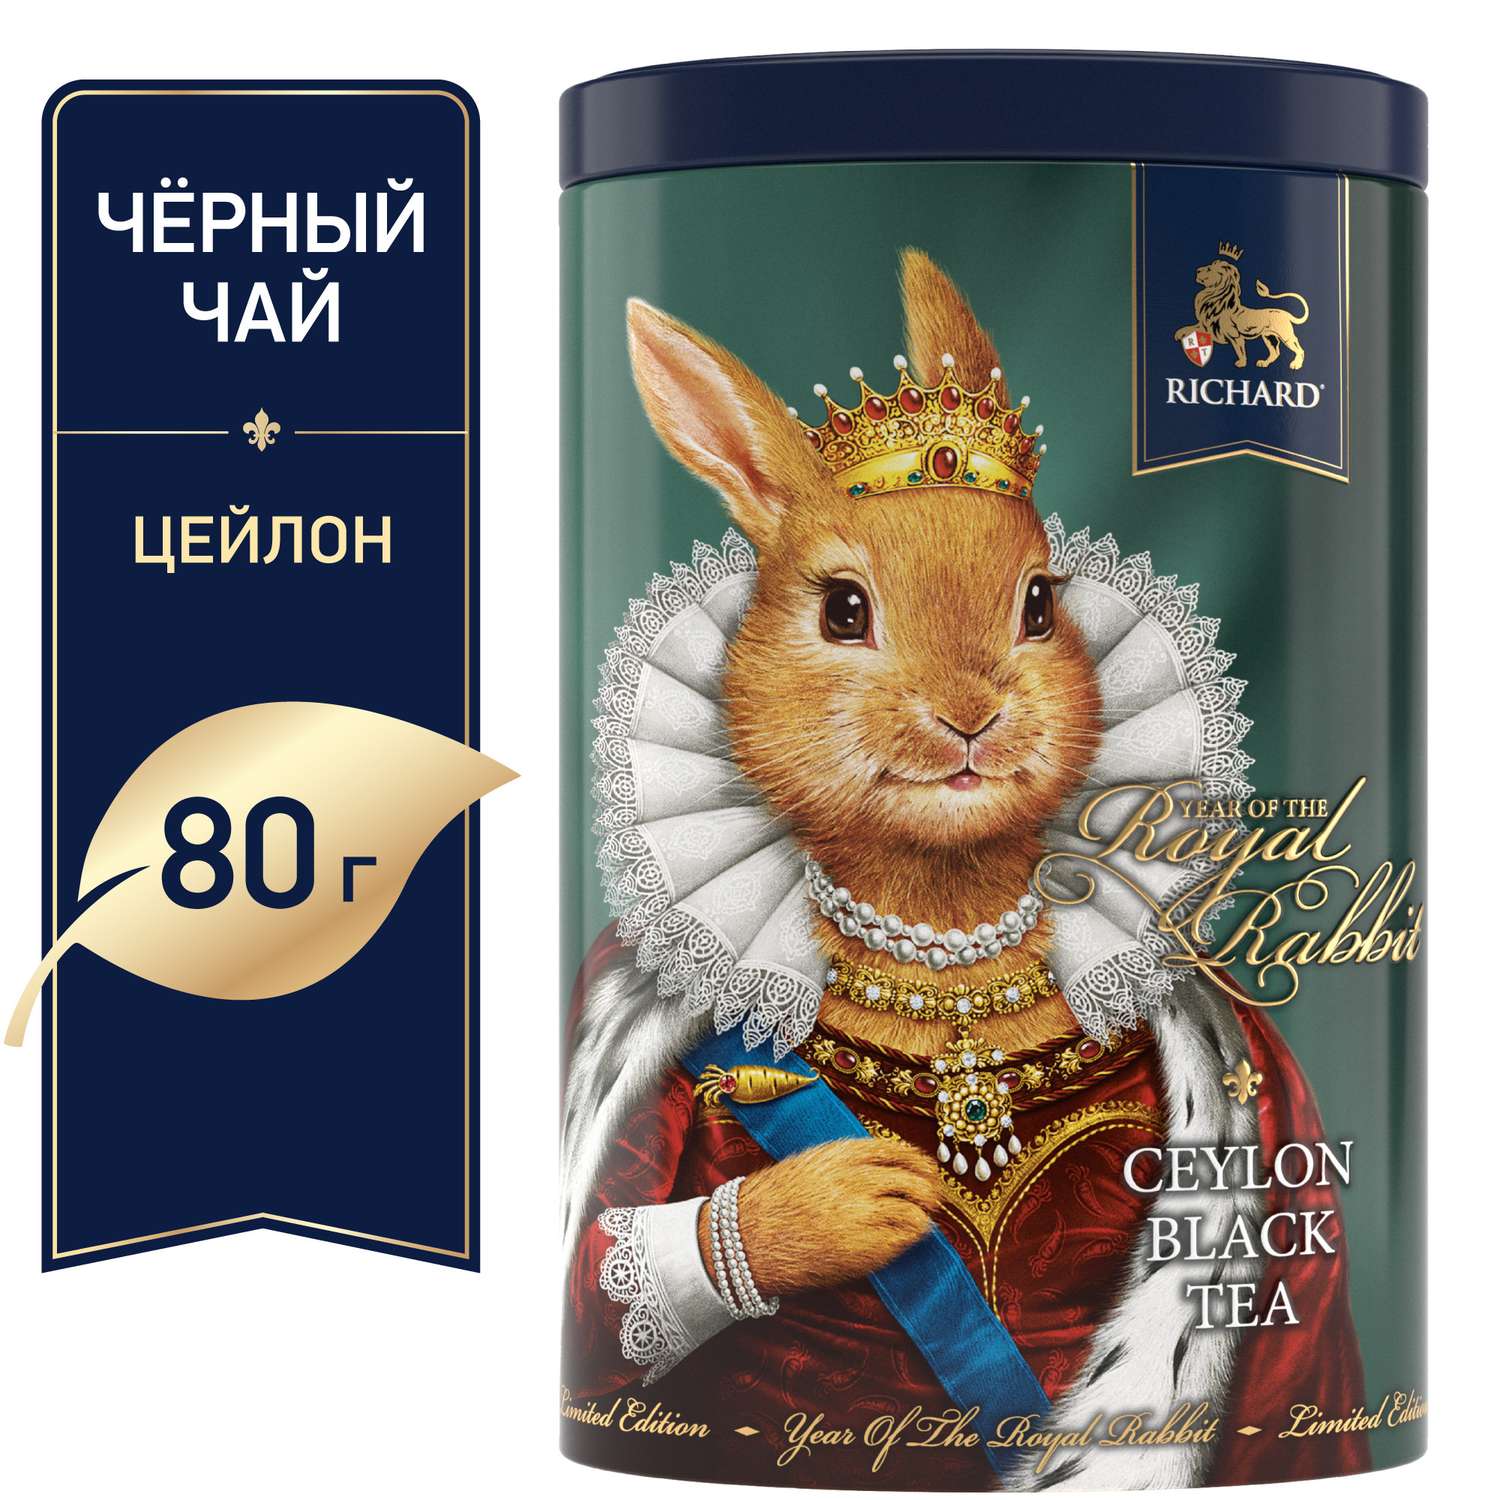 Чай черный крупнолистовой Richard Year of the Royal Rabbit с символом нового года королева 80 гр - фото 2